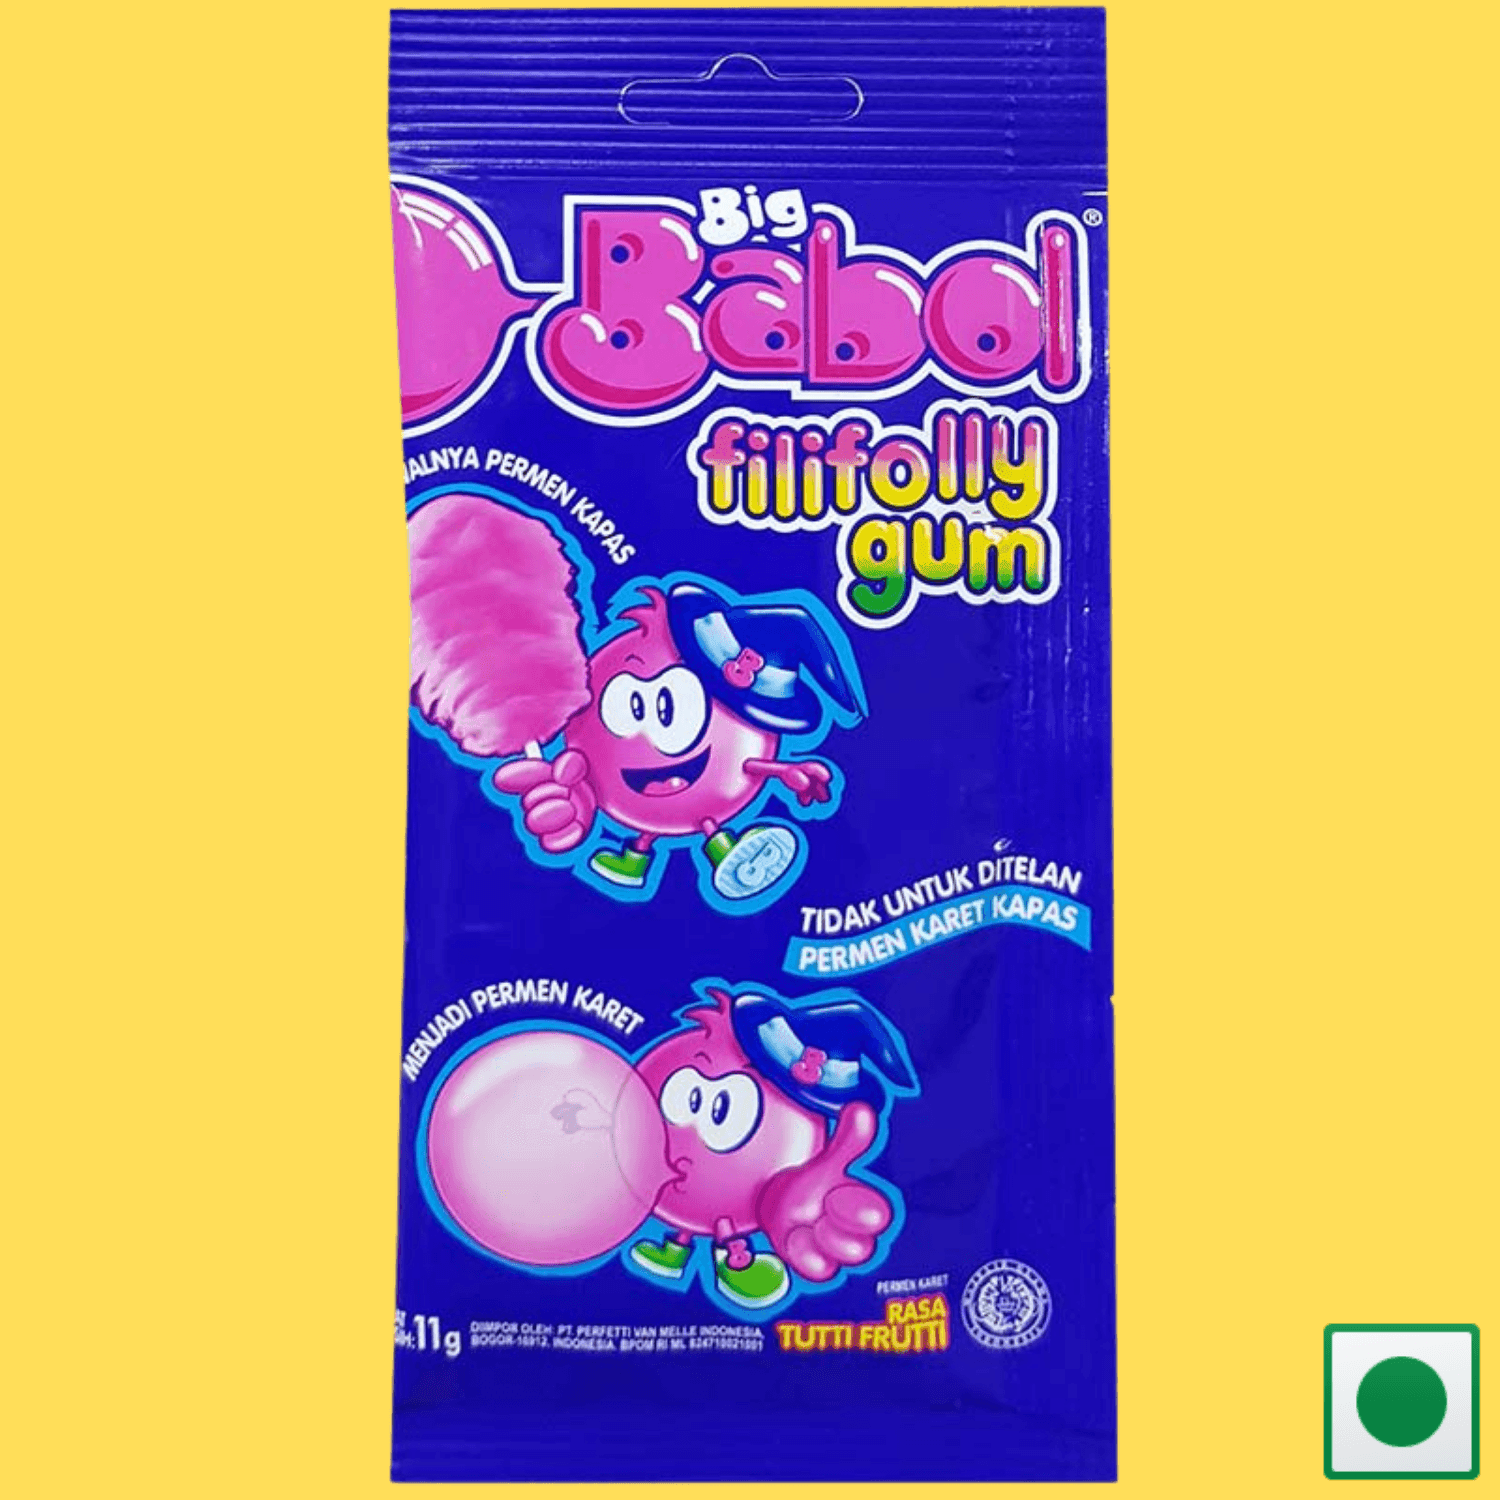 Big Babol Fillyfolly Rasa Tutti Frutti Gum, 11g (Imported) - Super 7 Mart